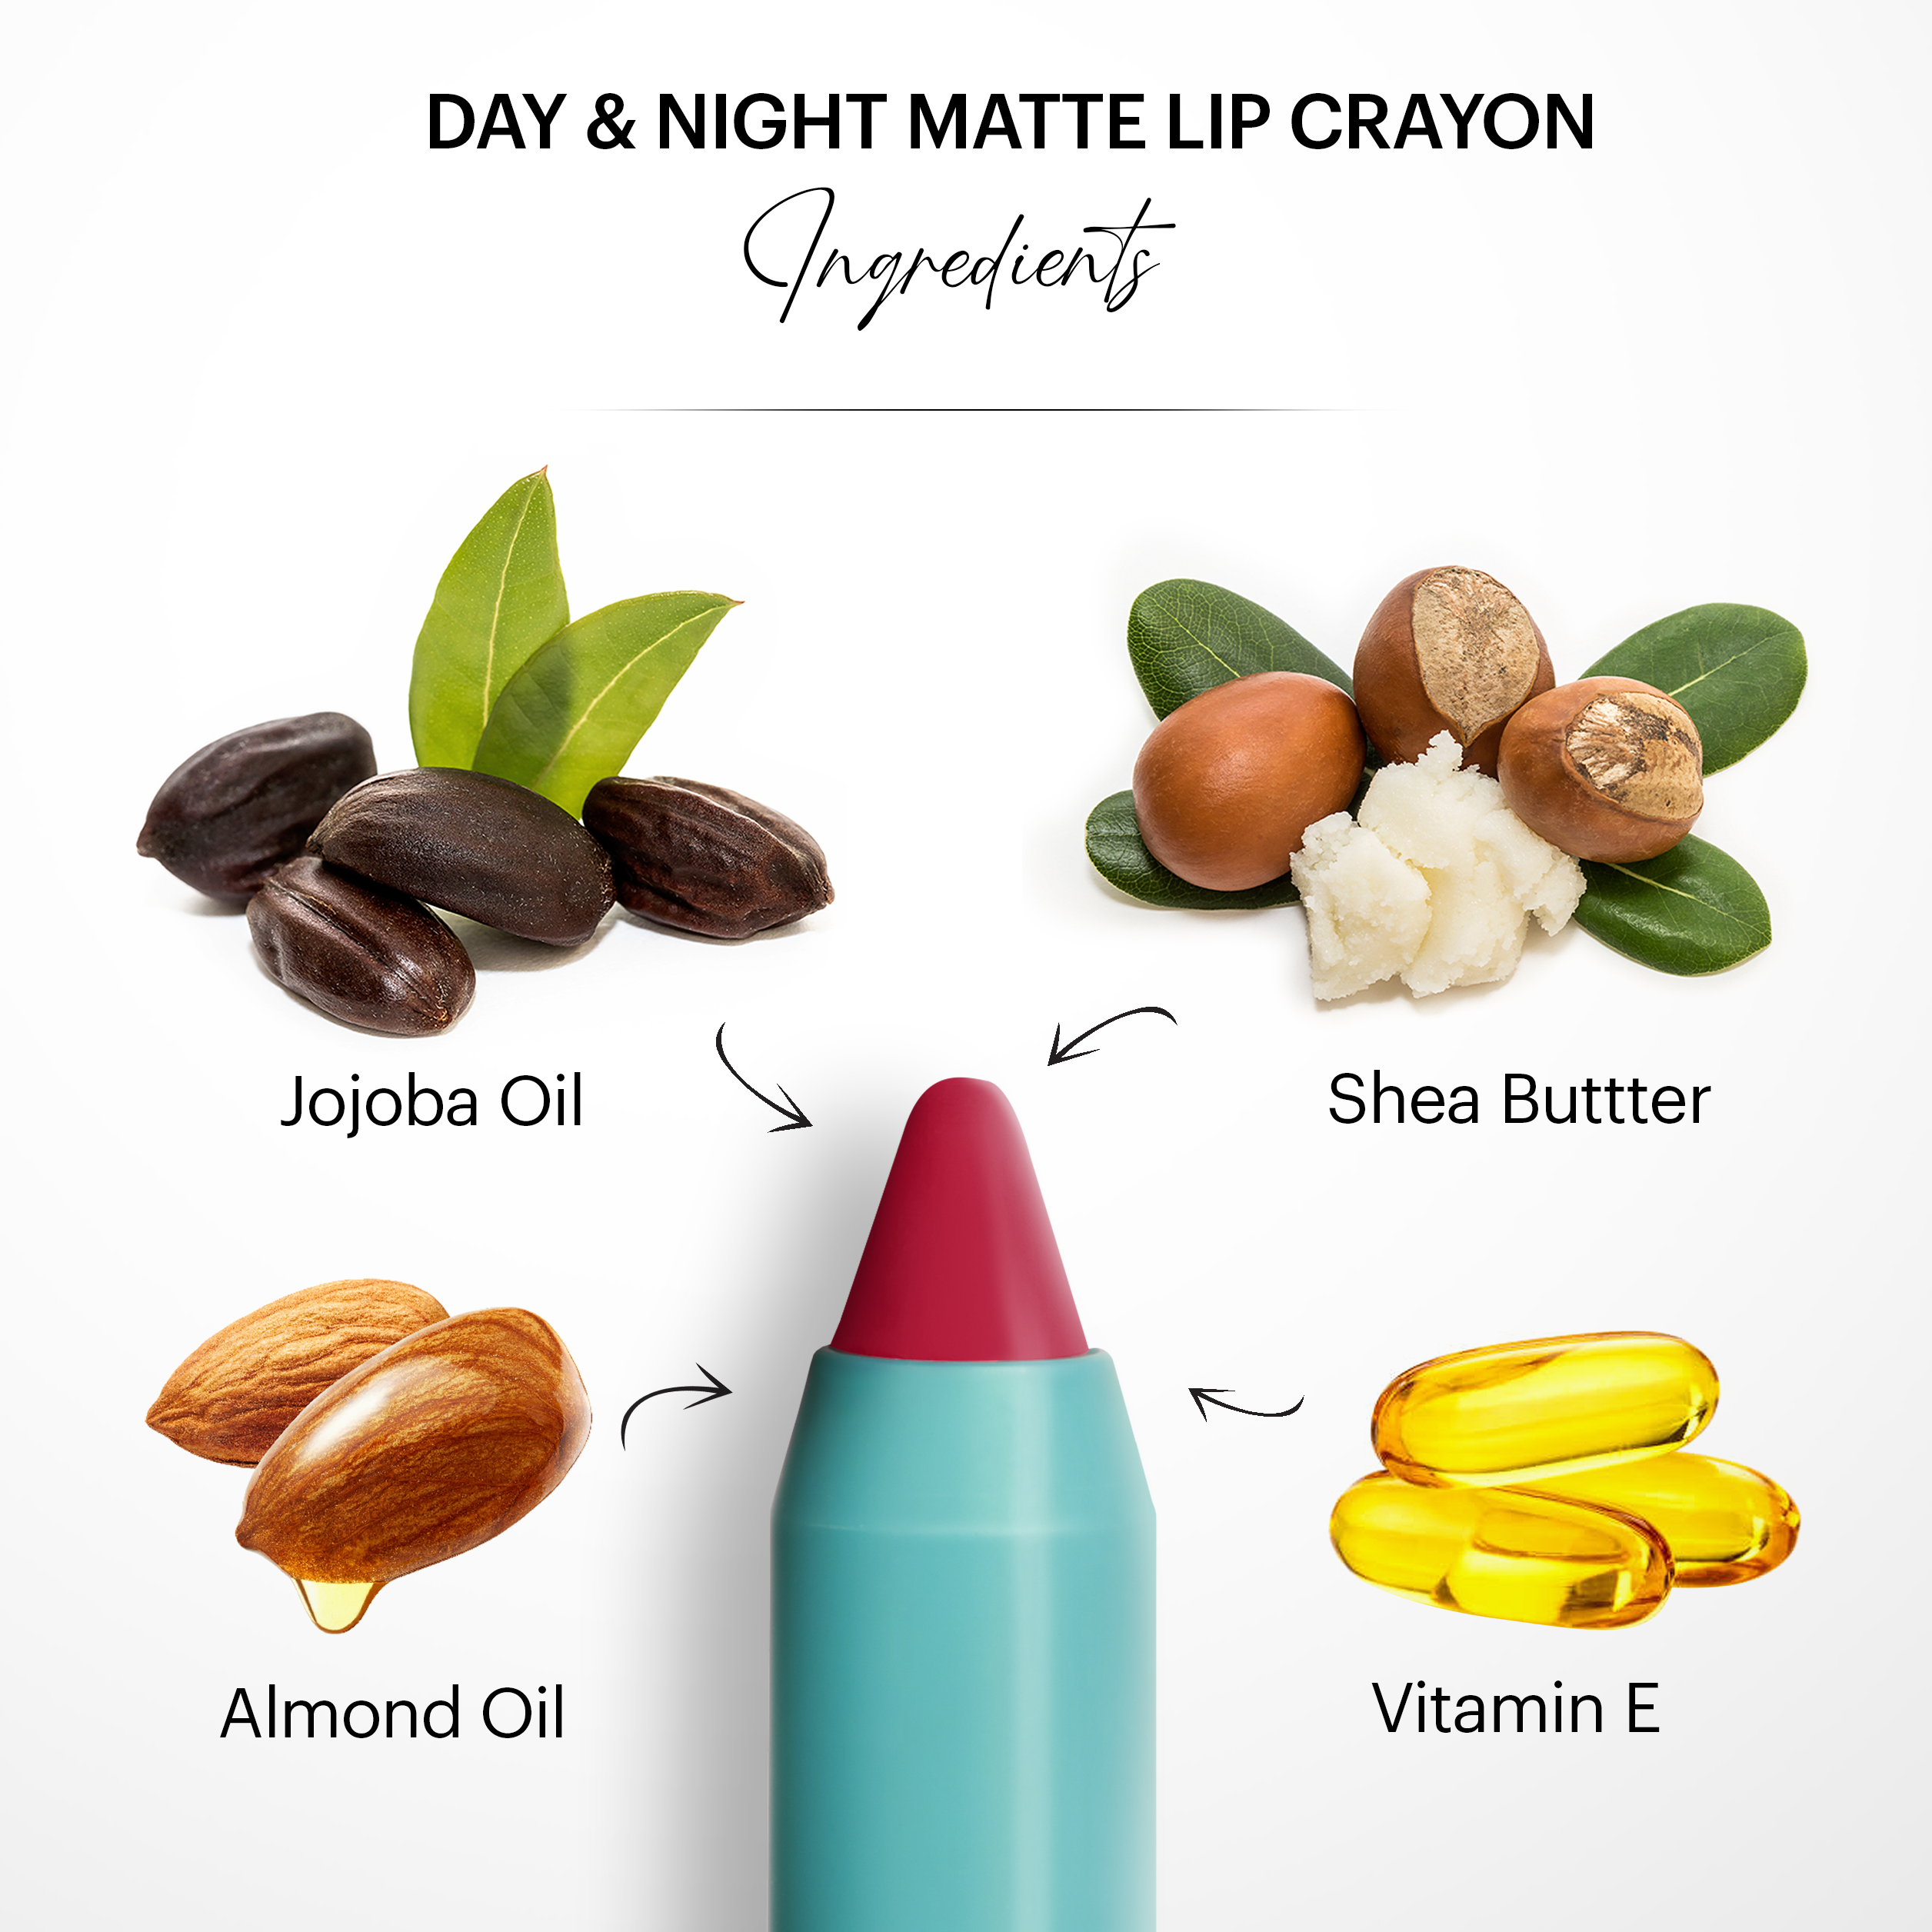 Day & Night Creamy Matte Lip Crayon Shade: Boss Babe 45